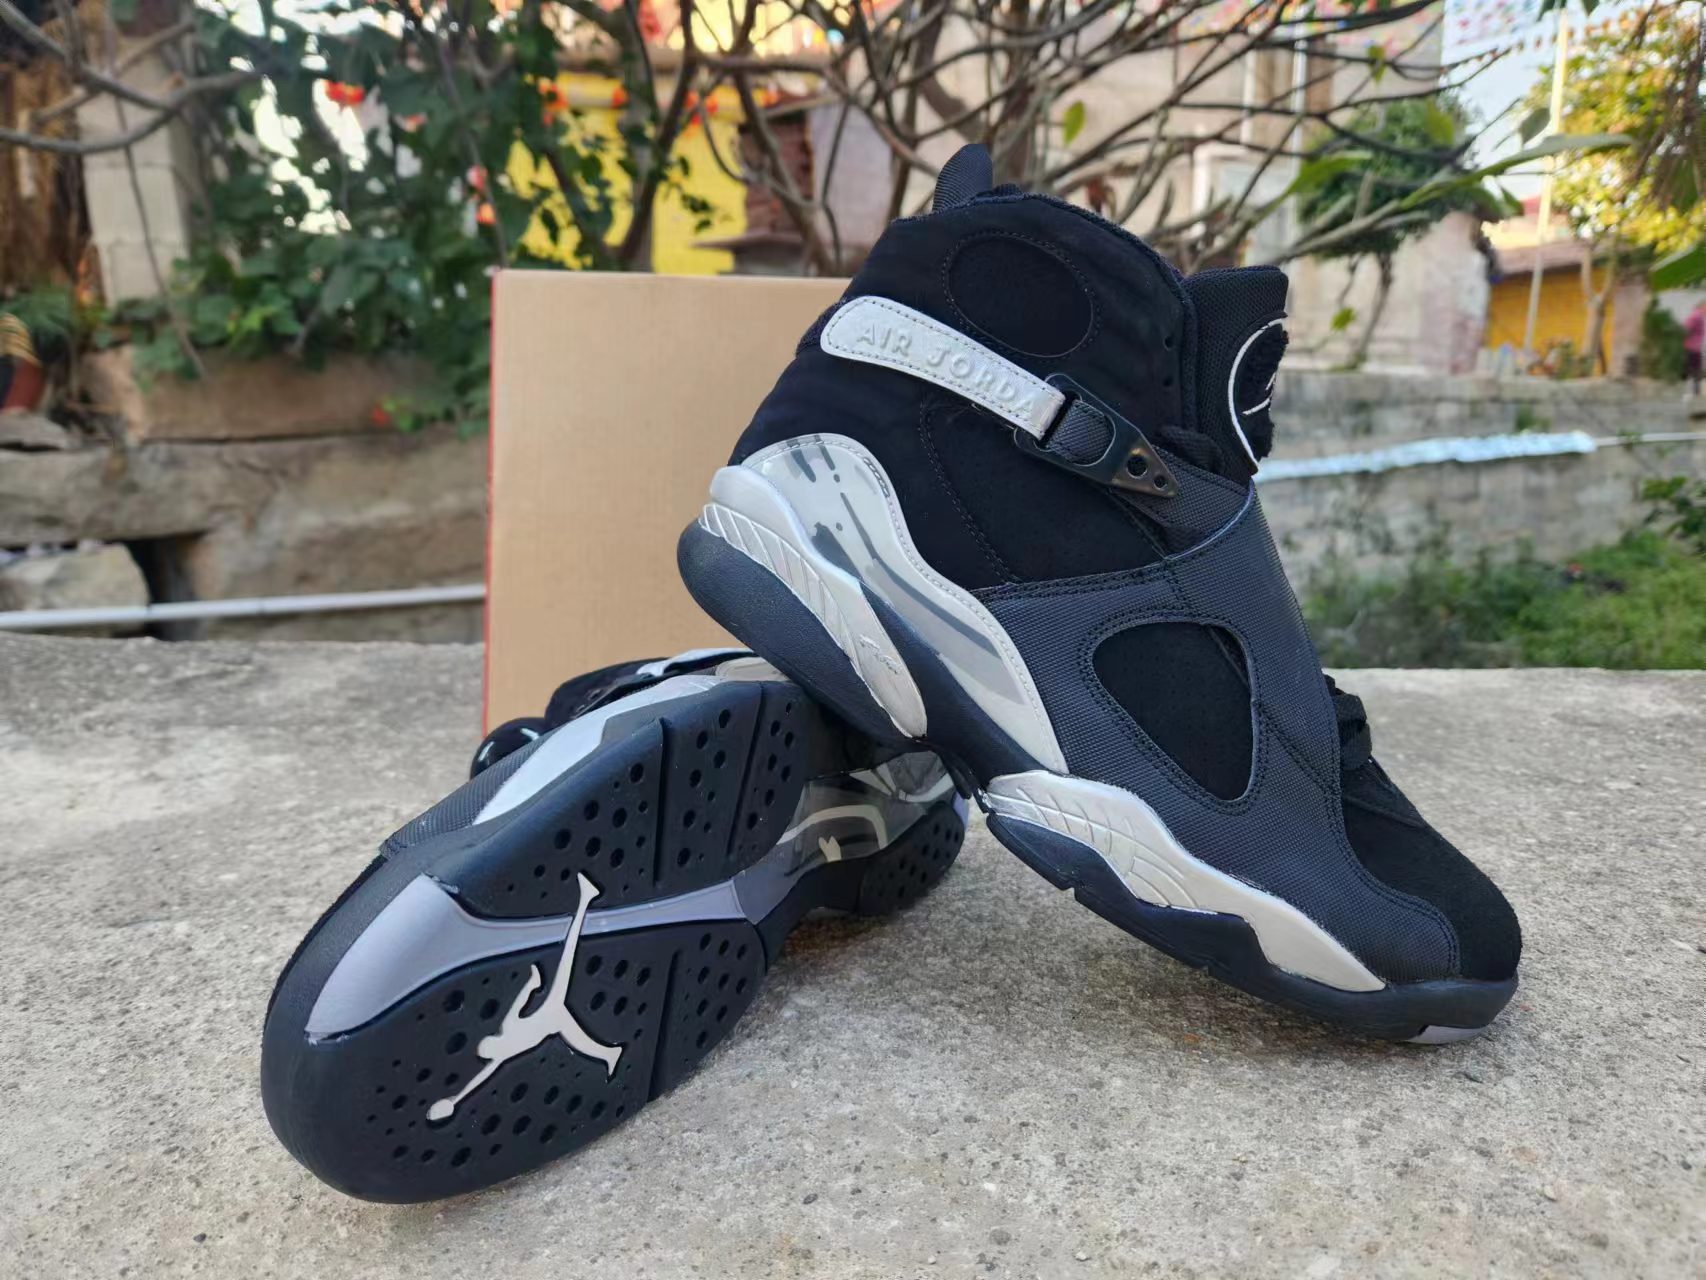 Air Jordan 8 Sneakers For Men # 275484, cheap Jordan8, only $65!